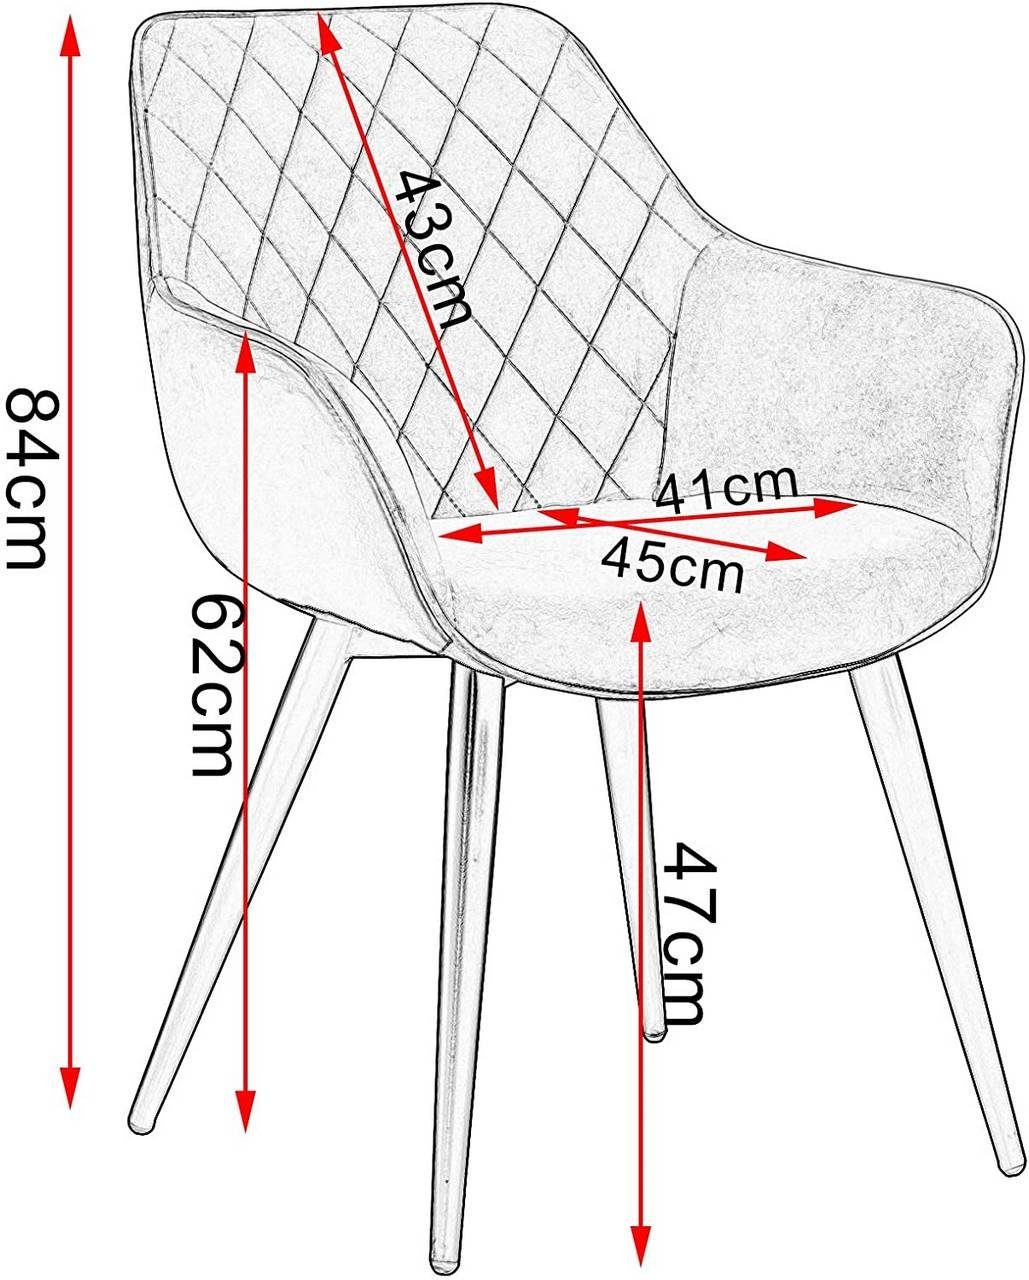 Woltu Esszimmerstuhl (2 St), mit Armlehnen, Design Stuhl, Metall Polsterstuhl